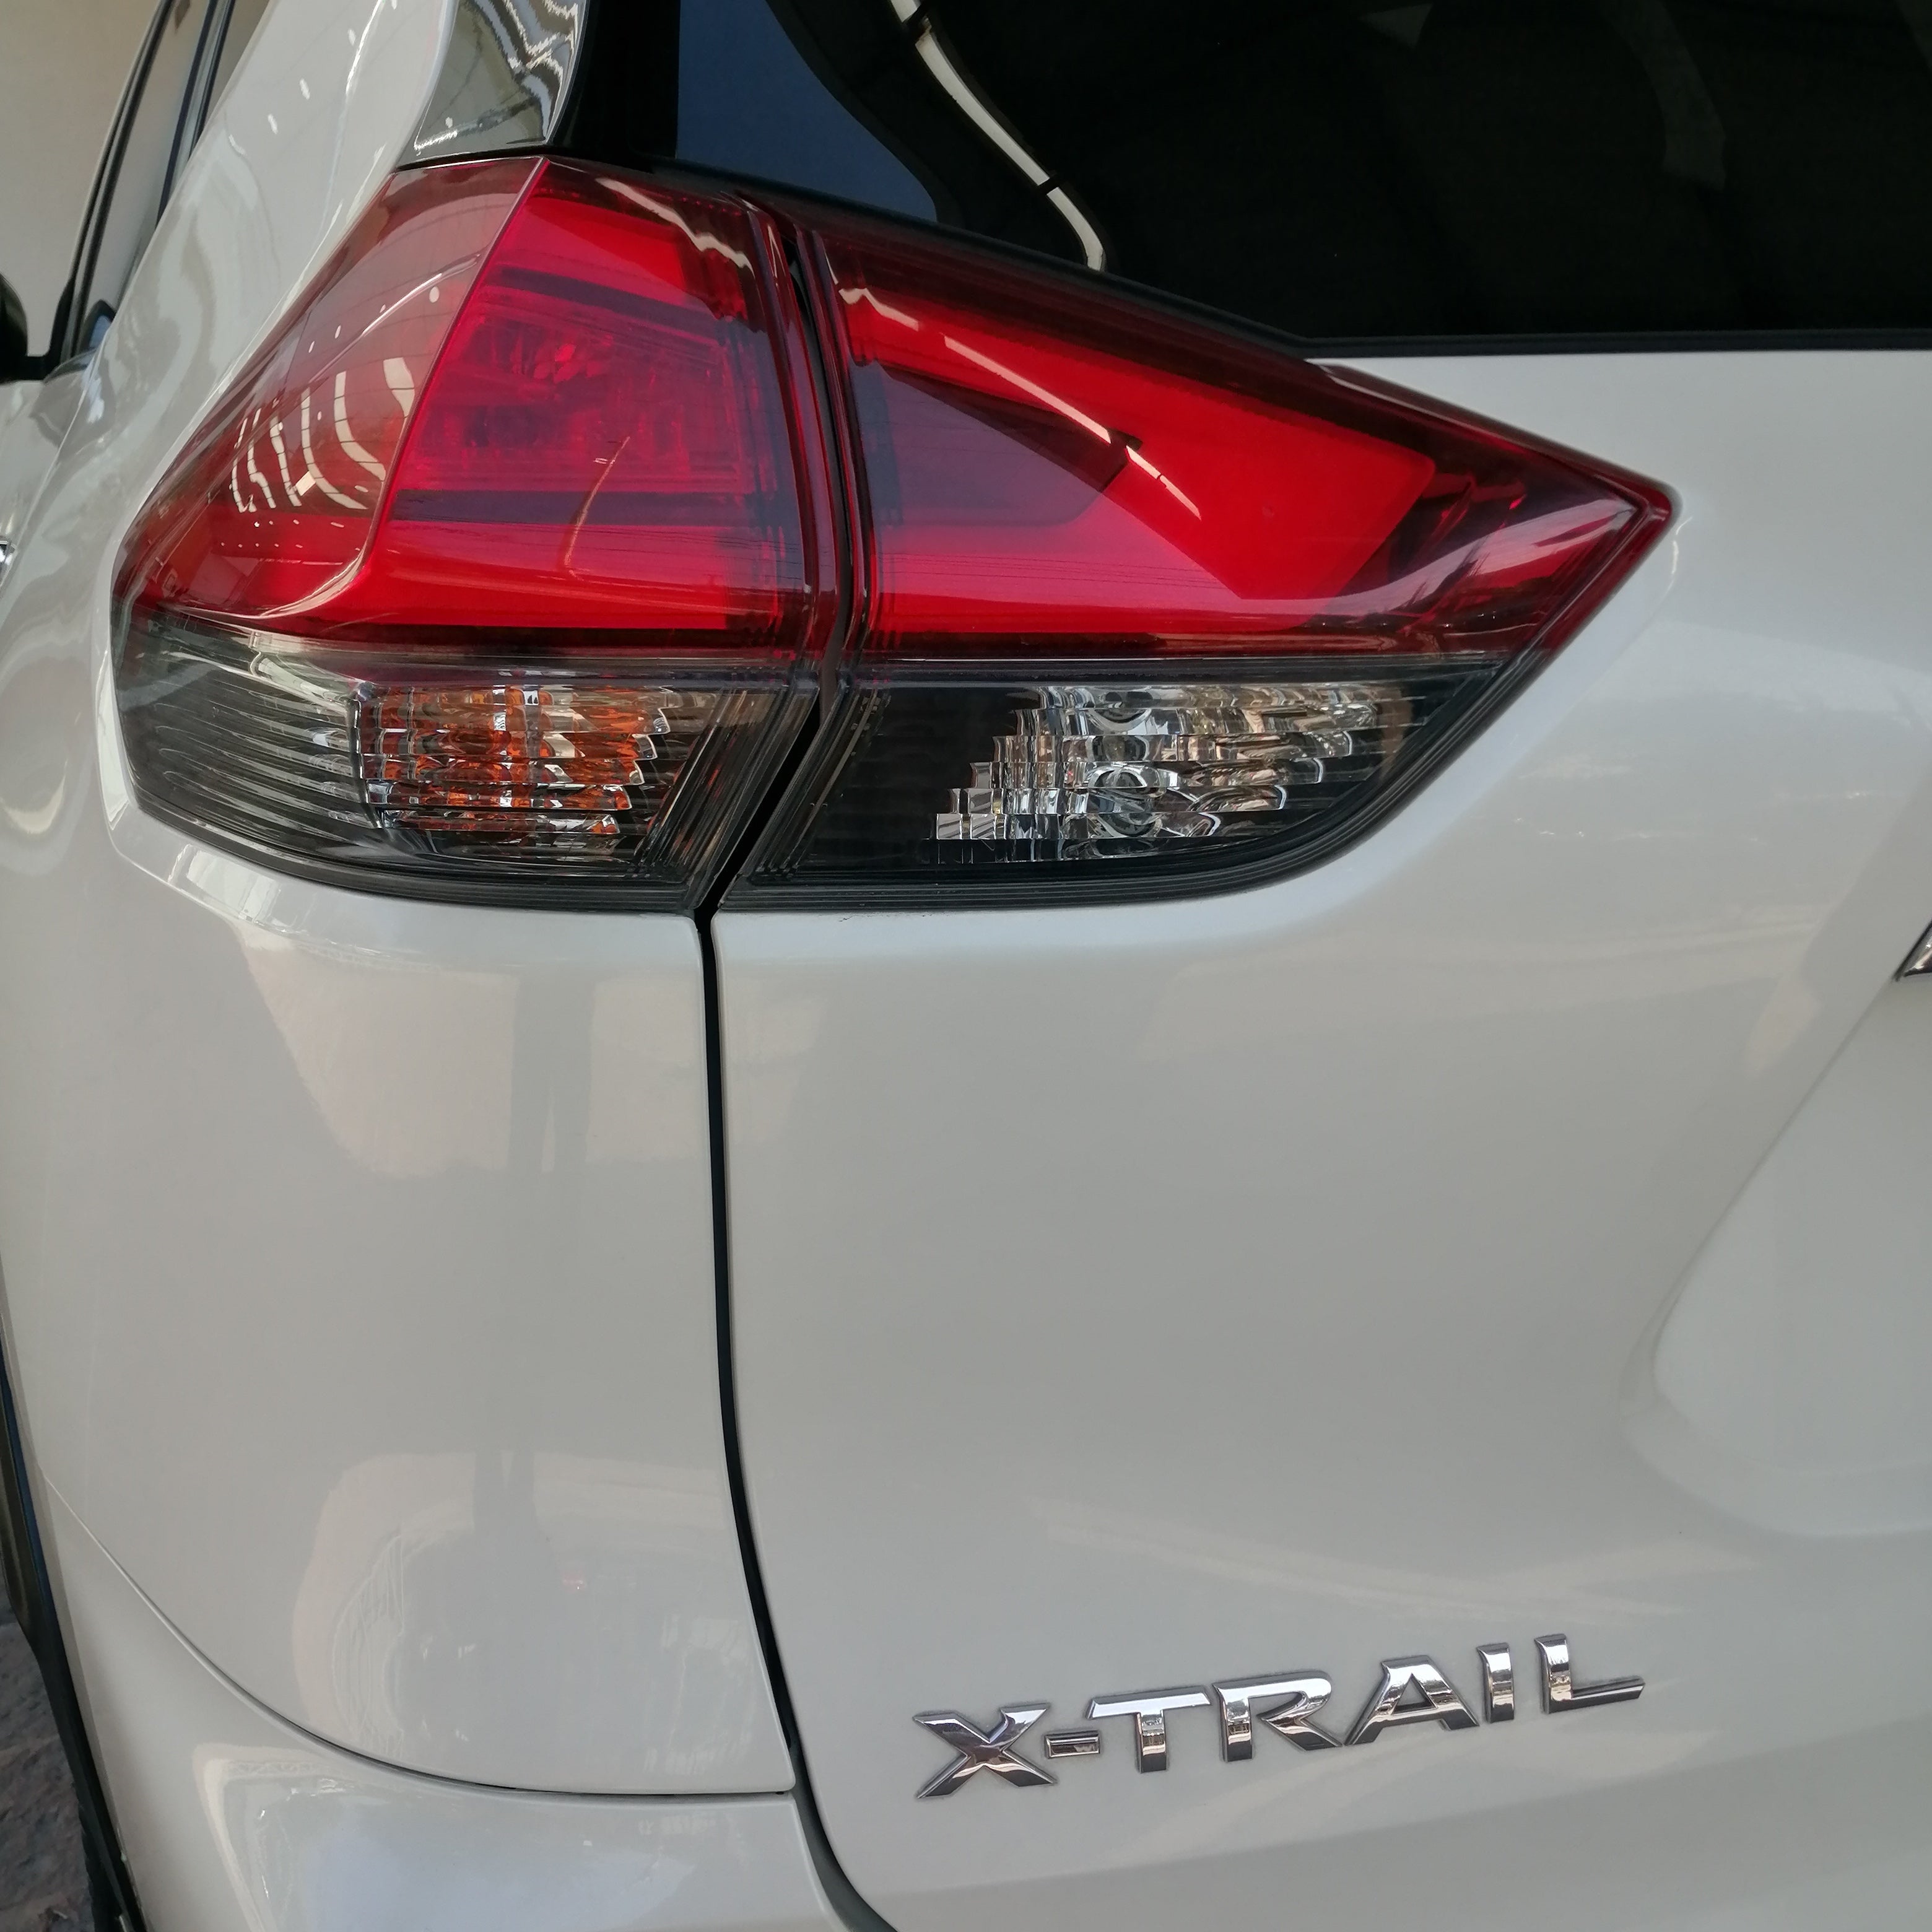 2021 Nissan X-Trail EXCLUSIVE, L4, 2.5L, 170 CP, 5 PUERTAS, AUT